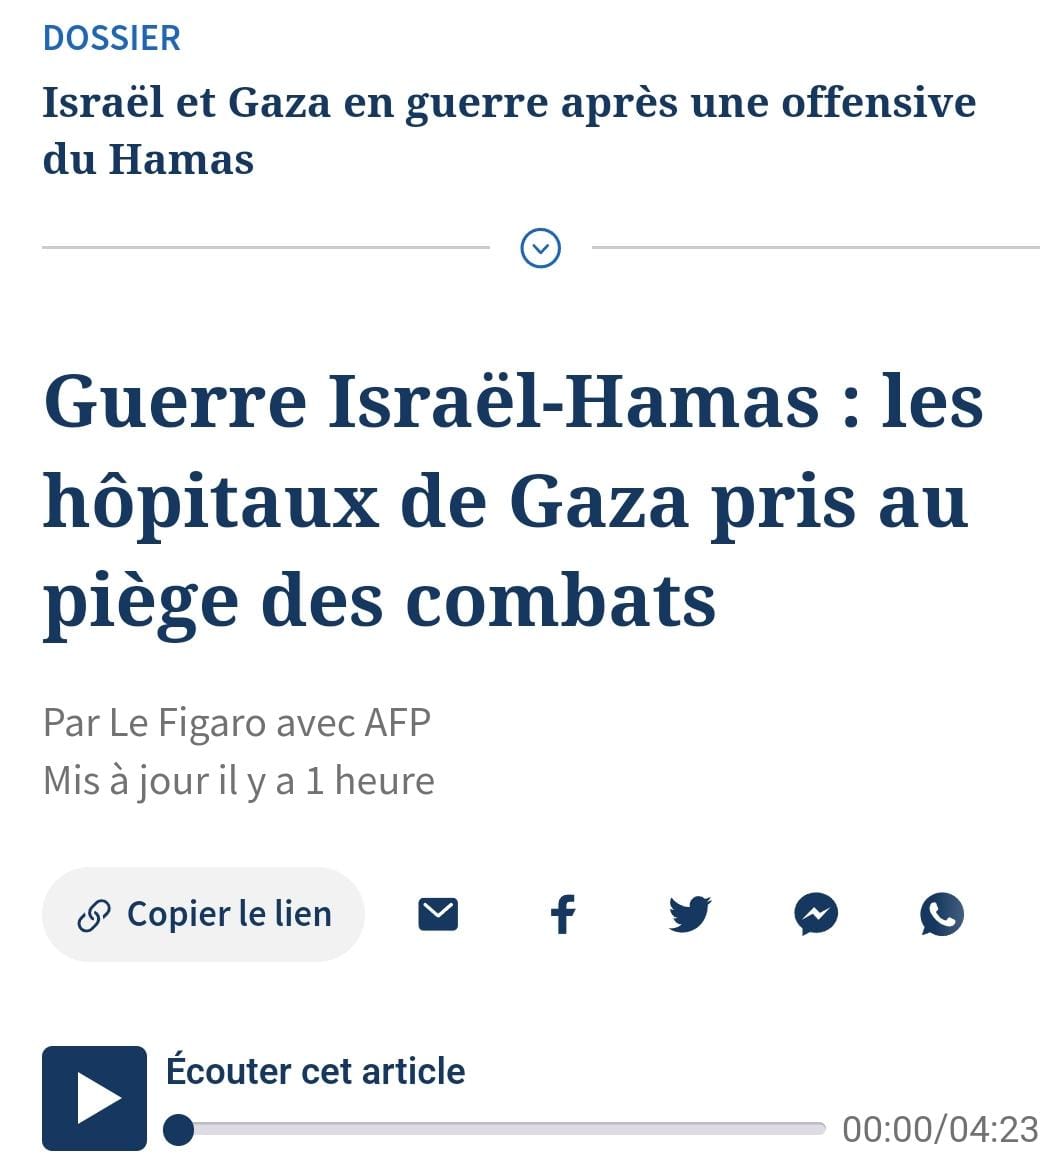 نشرت لوفيغارو يوم أمس خبراً بعنوان "الحرب بين إسرائيل وحماس: مستشفيات غزة محاصرة في القتال".